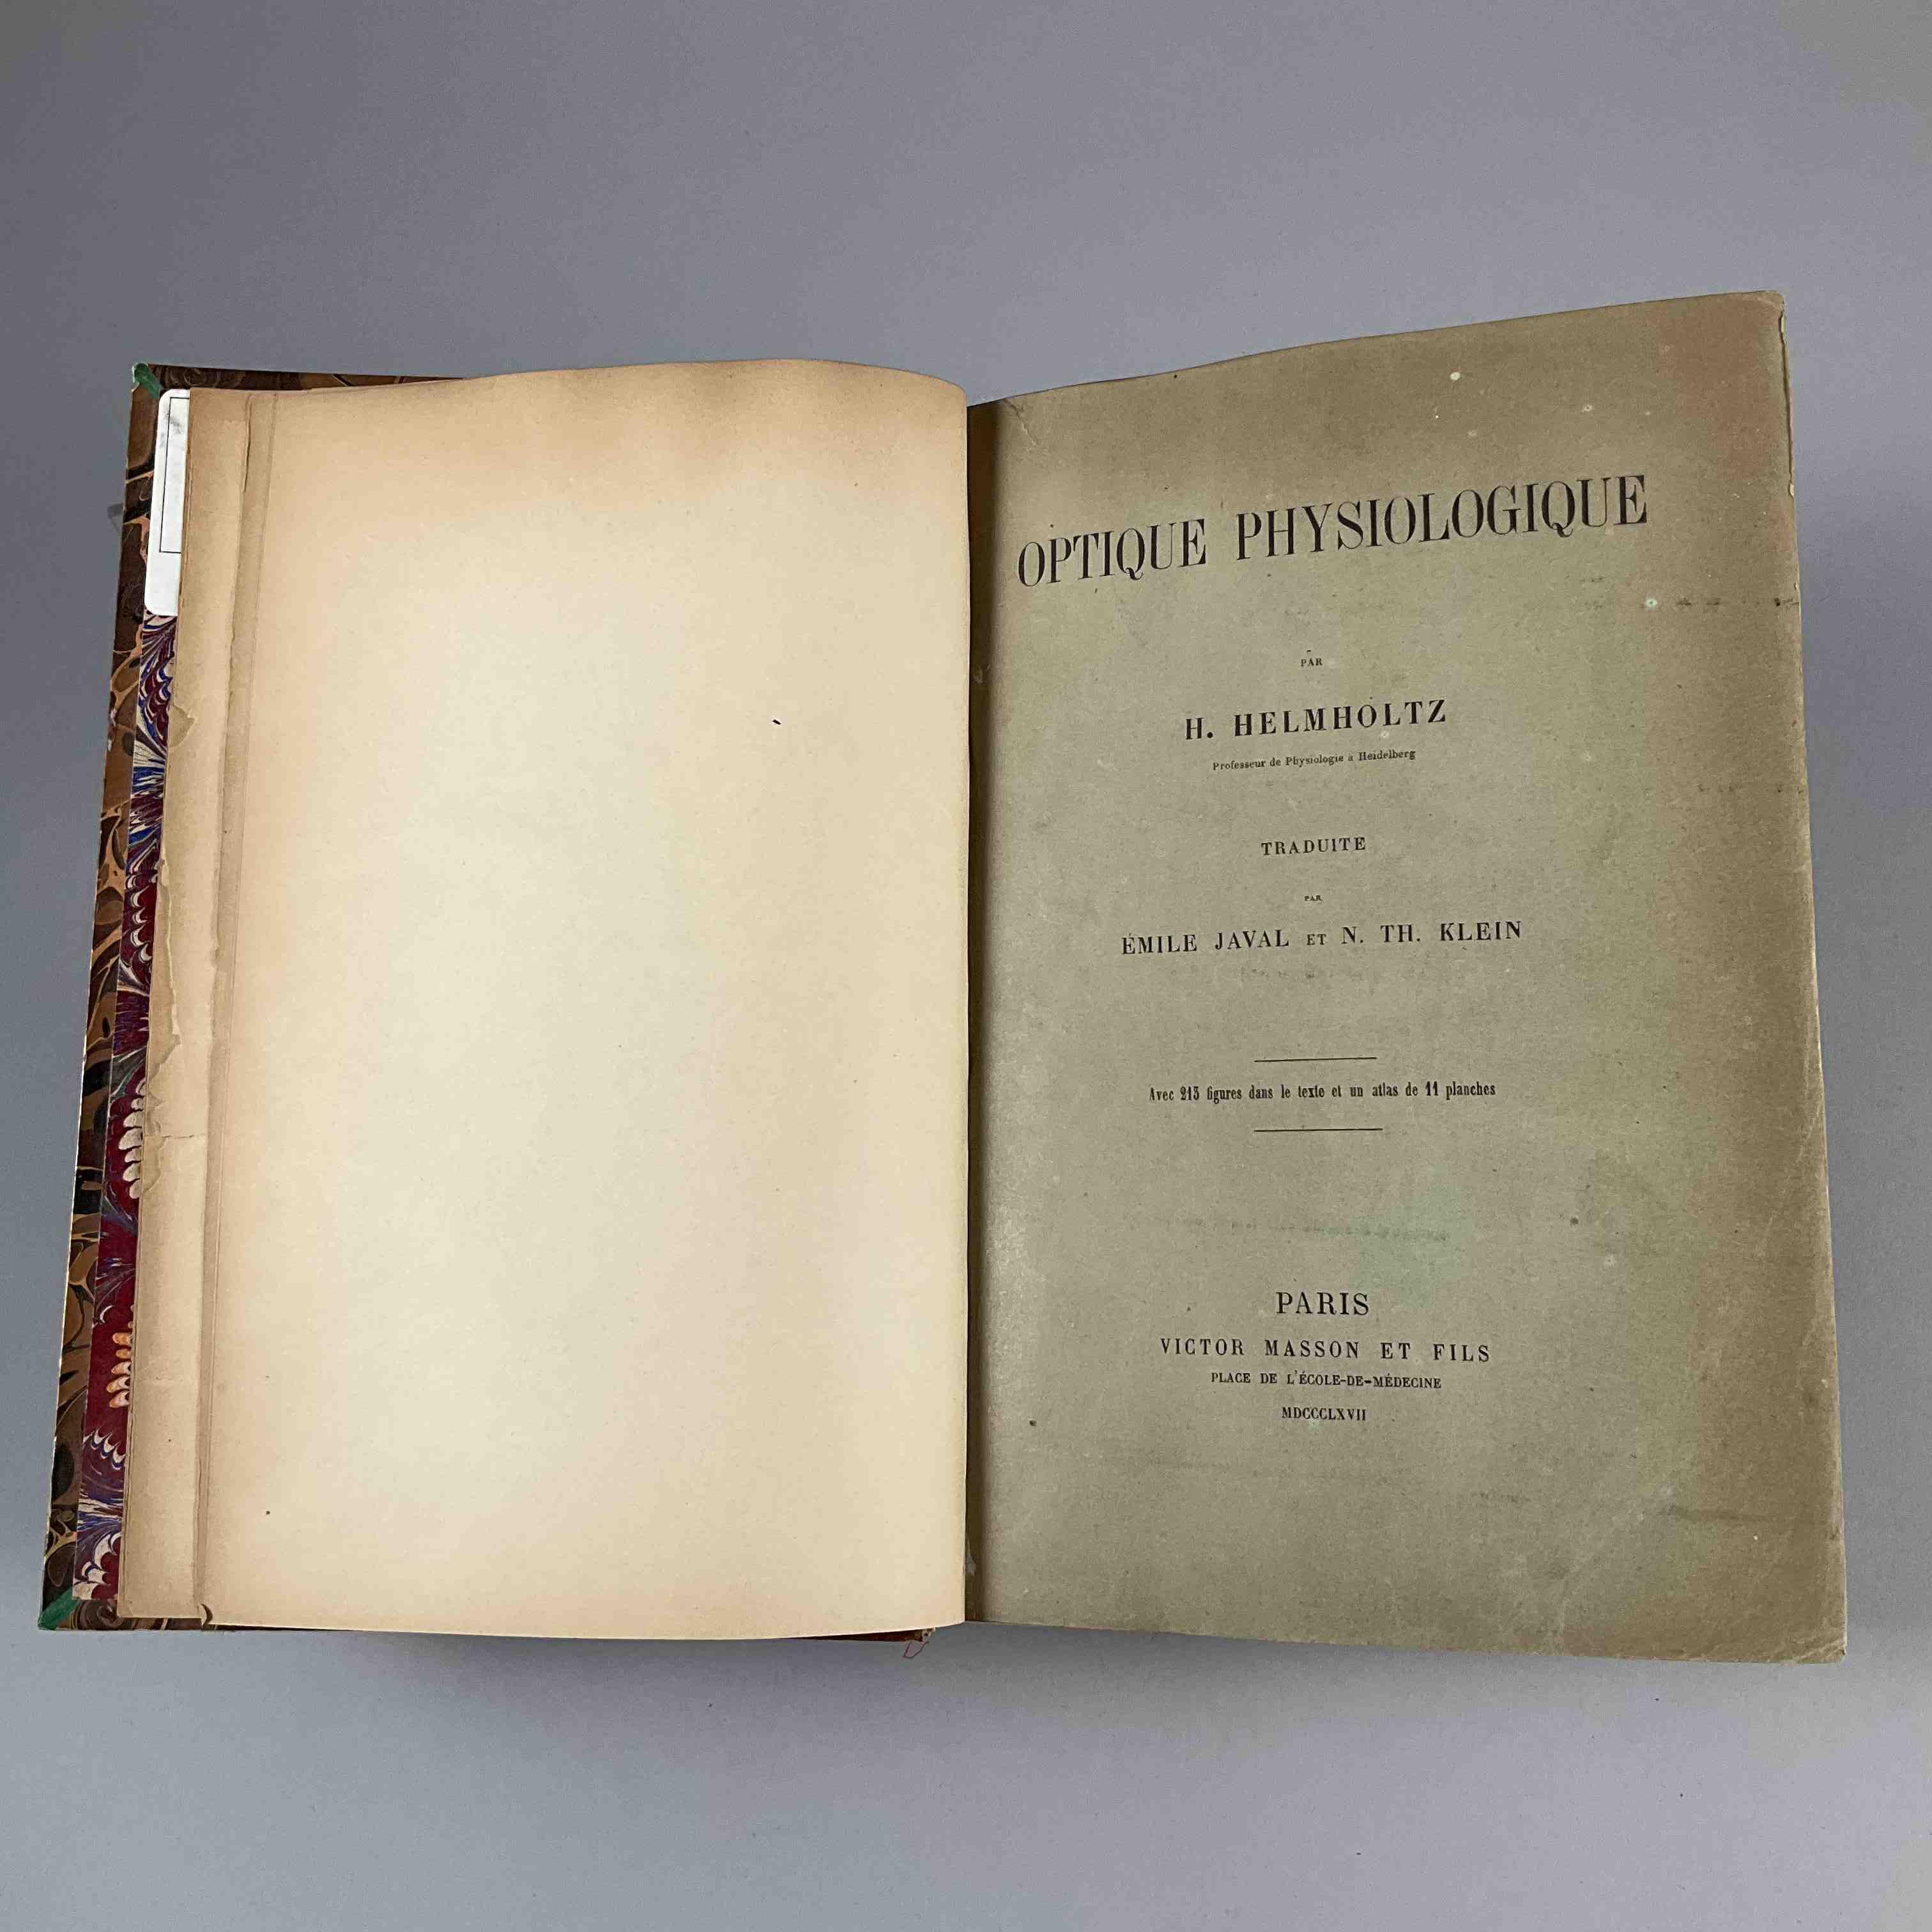 [Ophtalmologie] H Helmholtz, Optique physiologique.
Paris, Masson, 1867. In-8, [4]-XI-[1bl]-1057p-errata et...